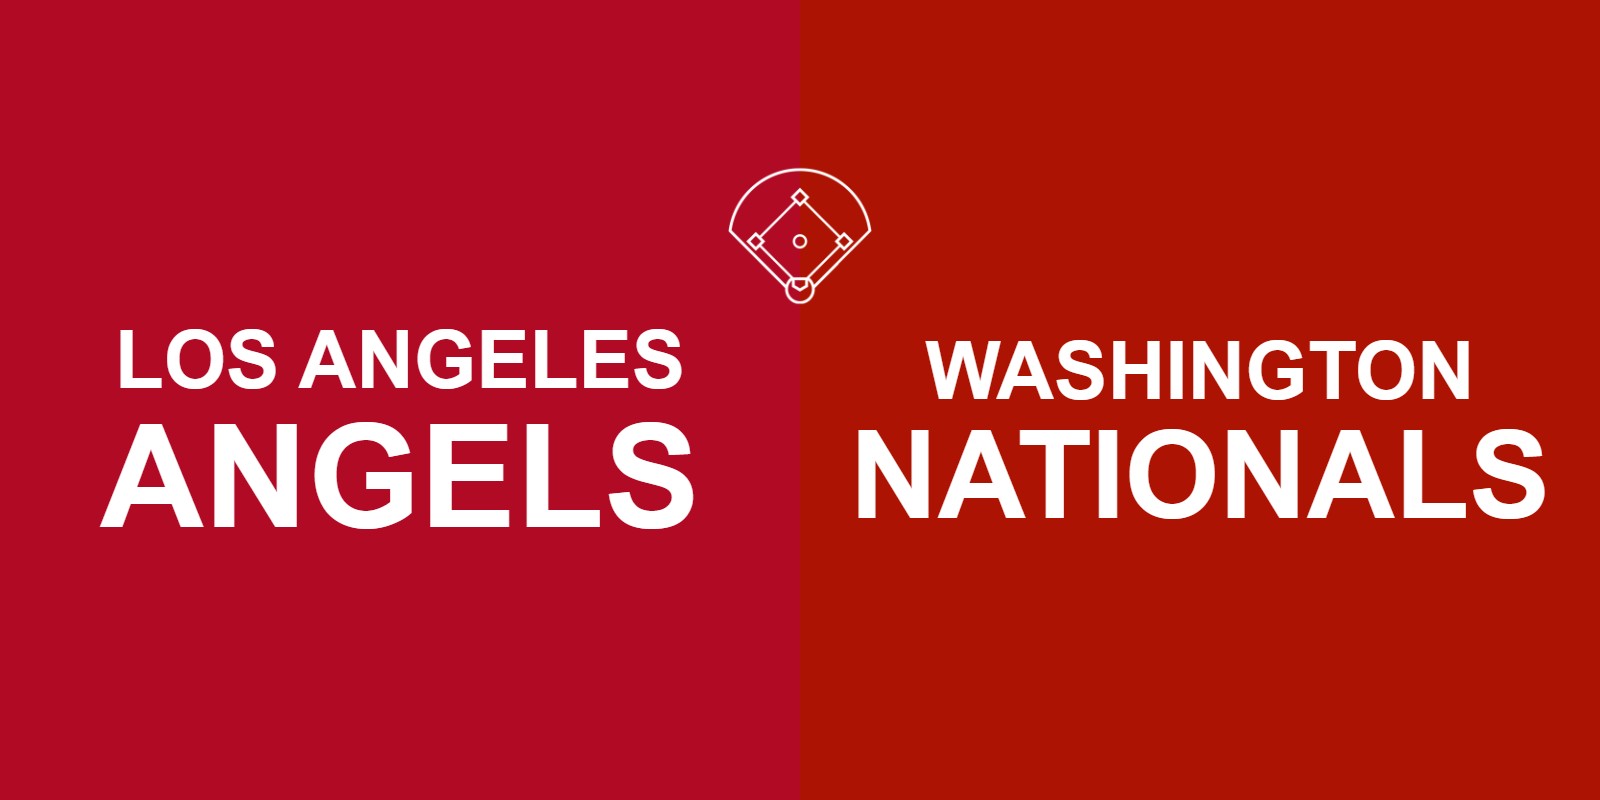 Angels vs Nationals